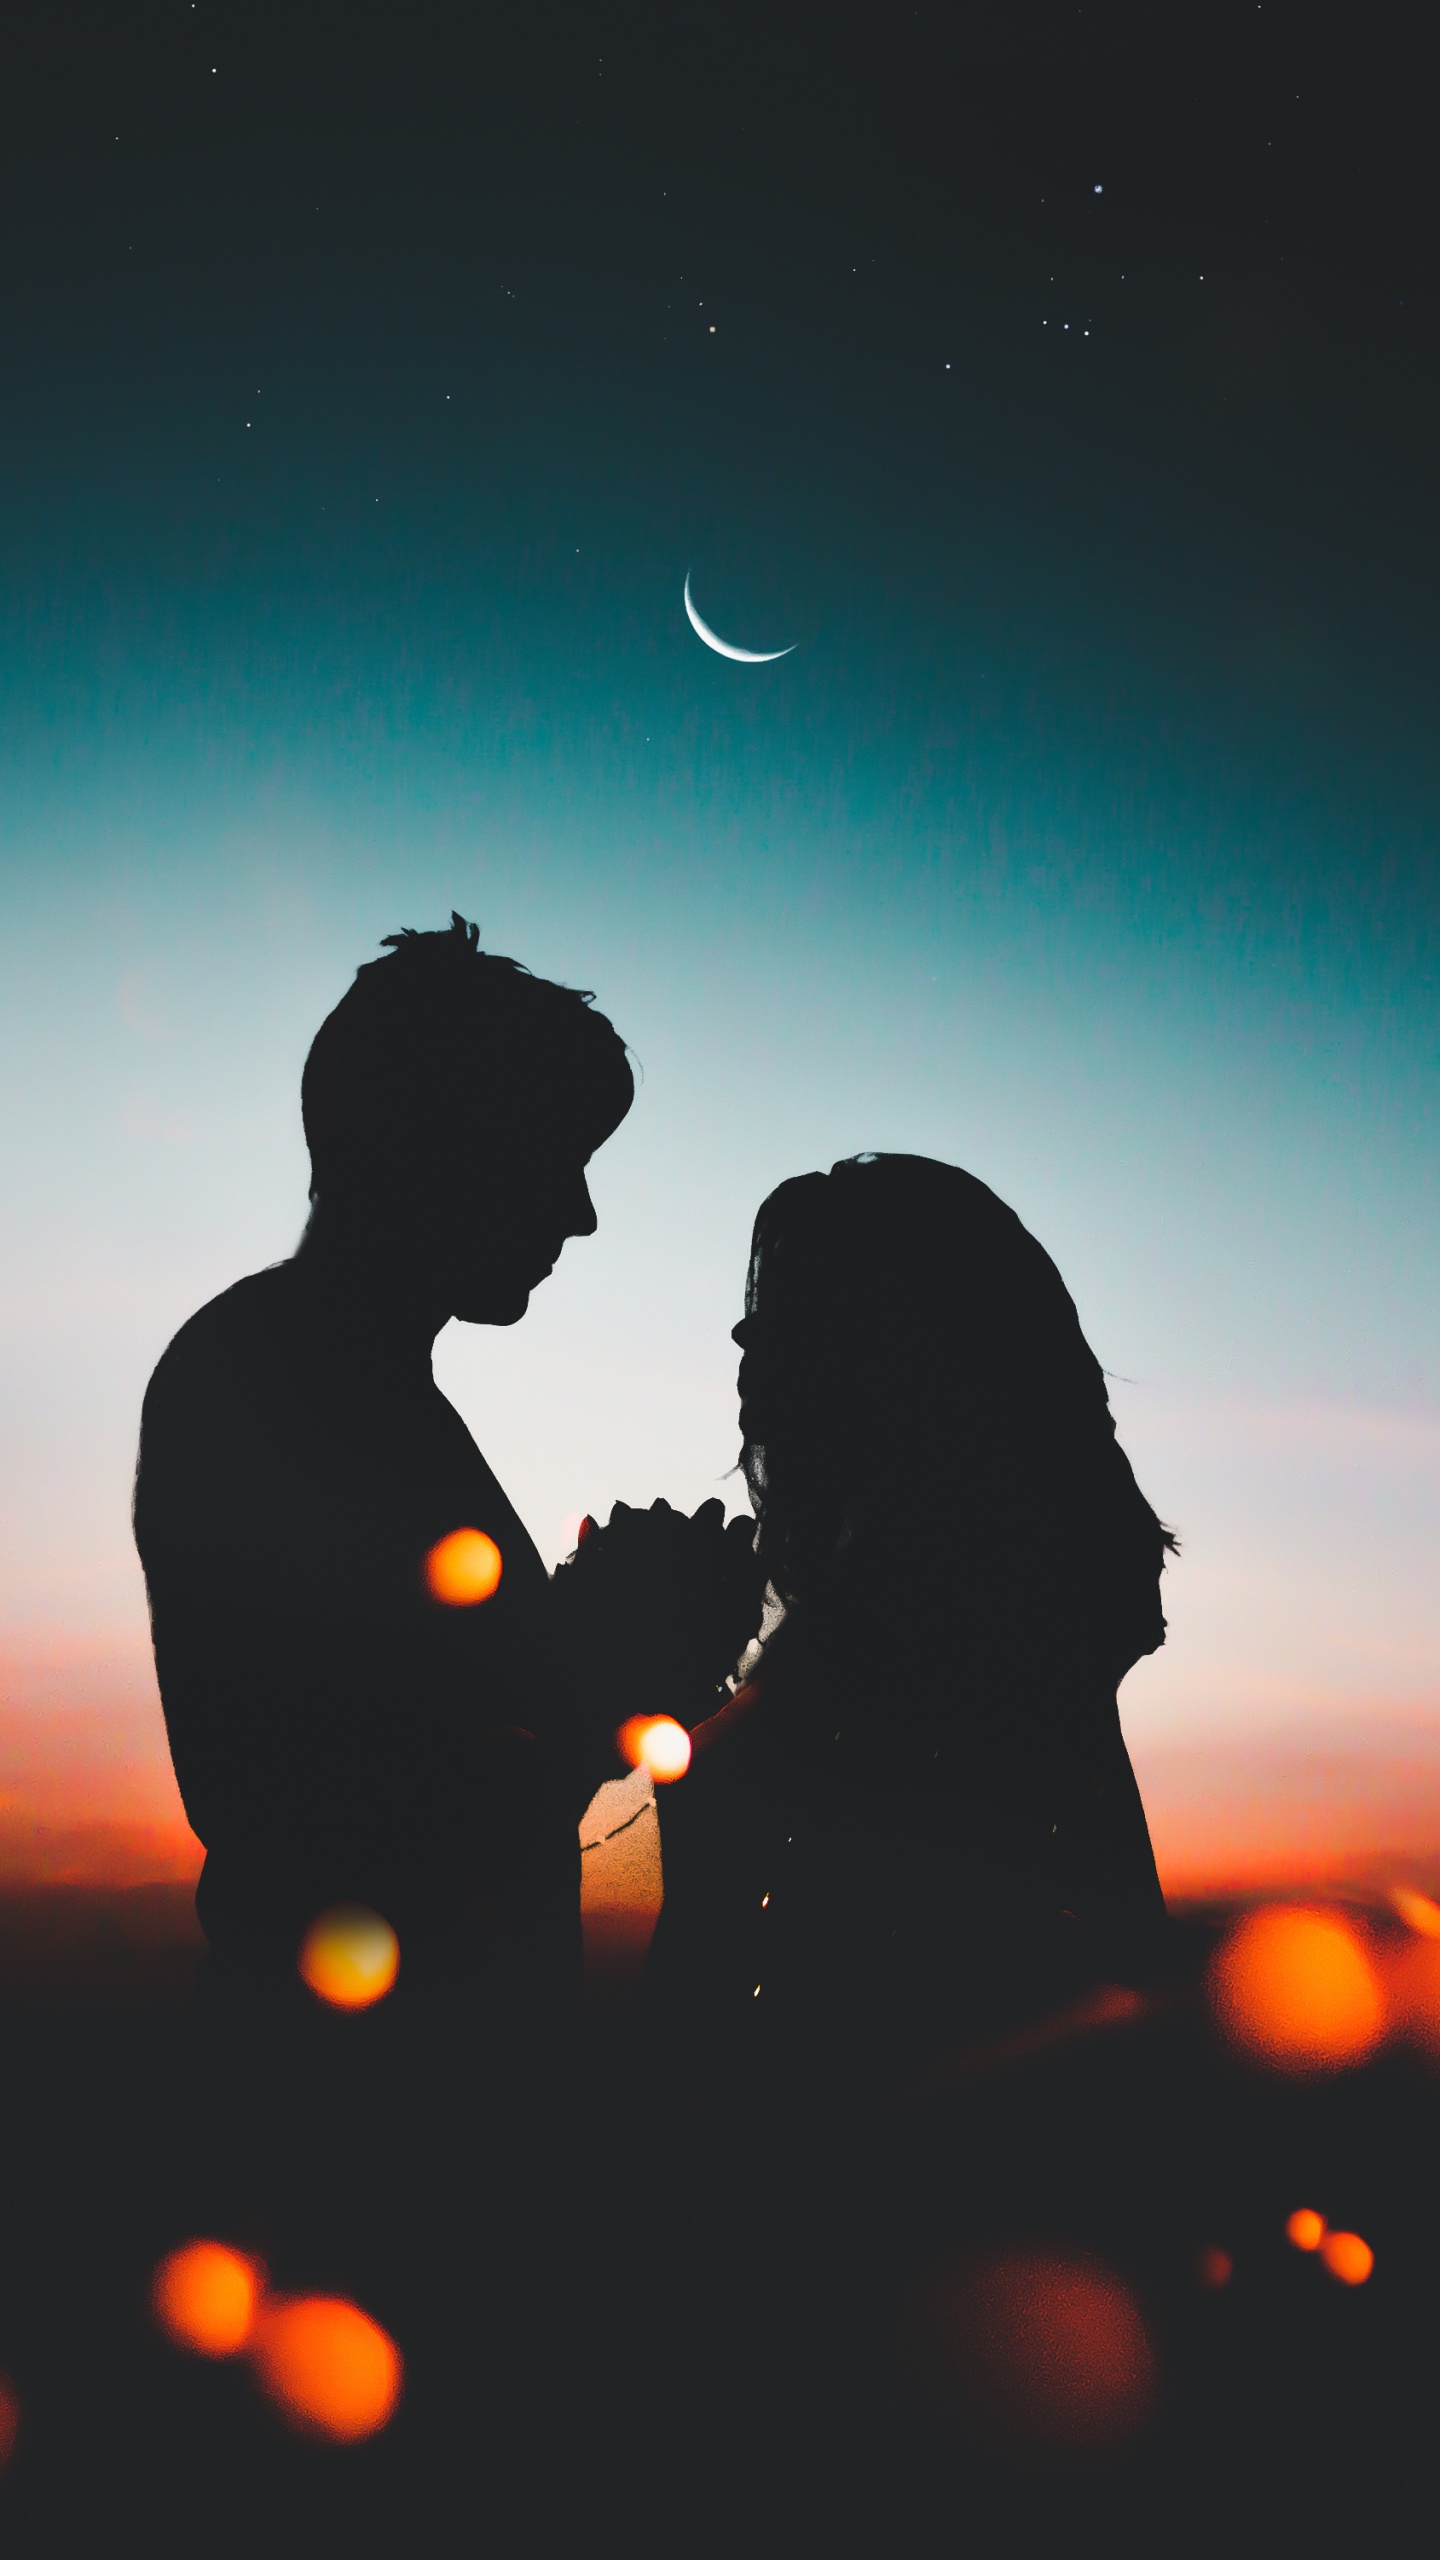 Romantik, Liebe, Nacht, Nachthimmel, Highlight. Wallpaper in 1440x2560 Resolution